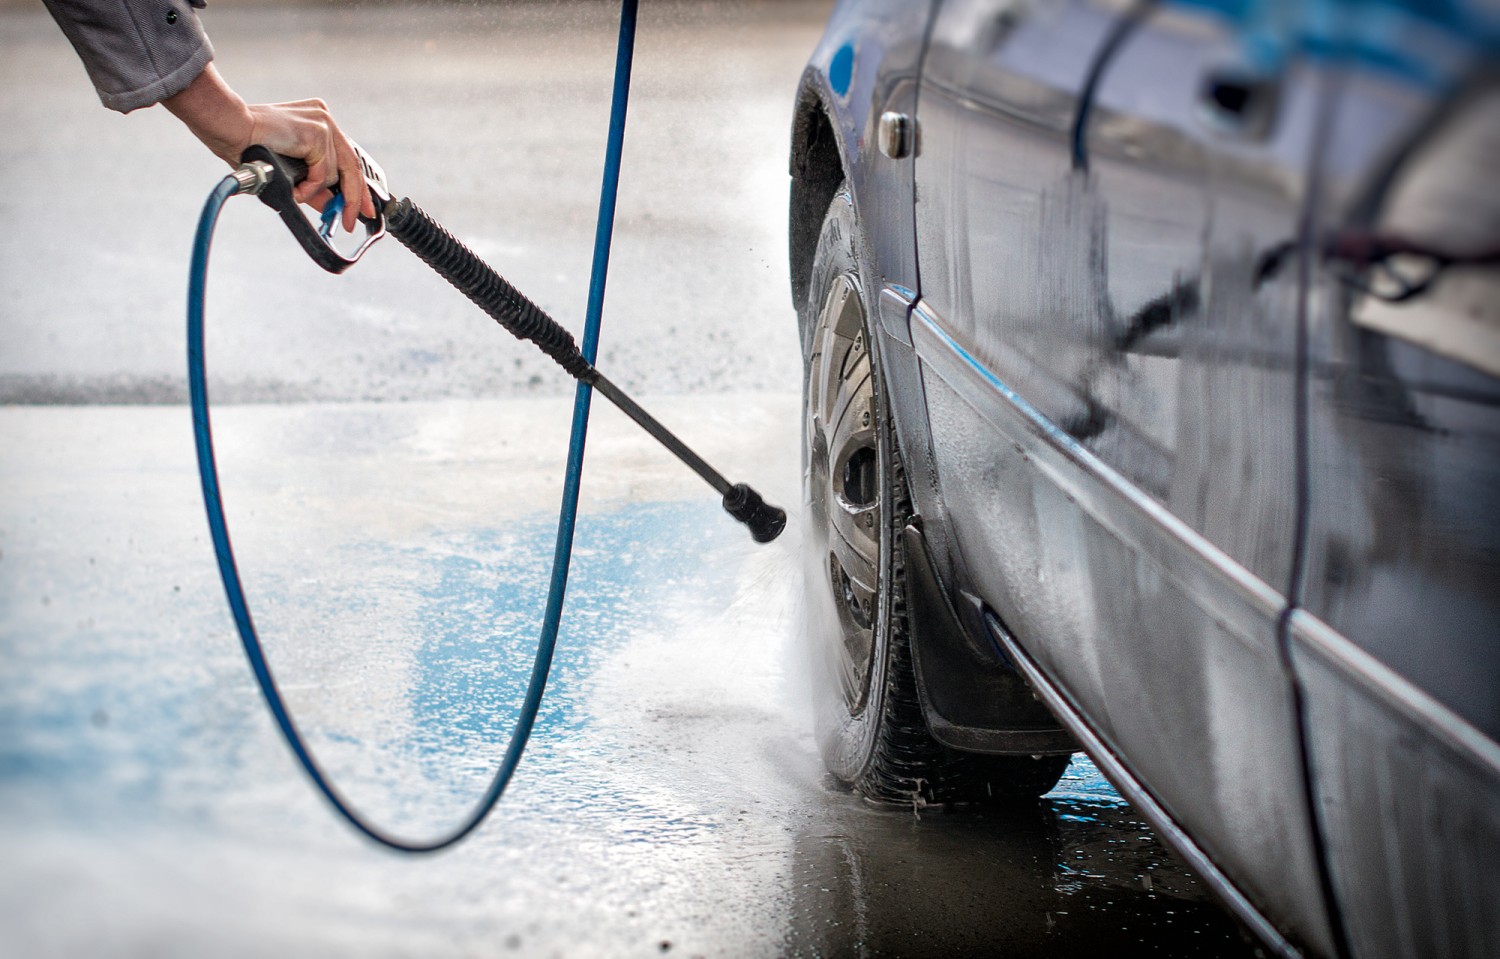 Опытная Diana Prince моет автомобиль и поливает себя водой